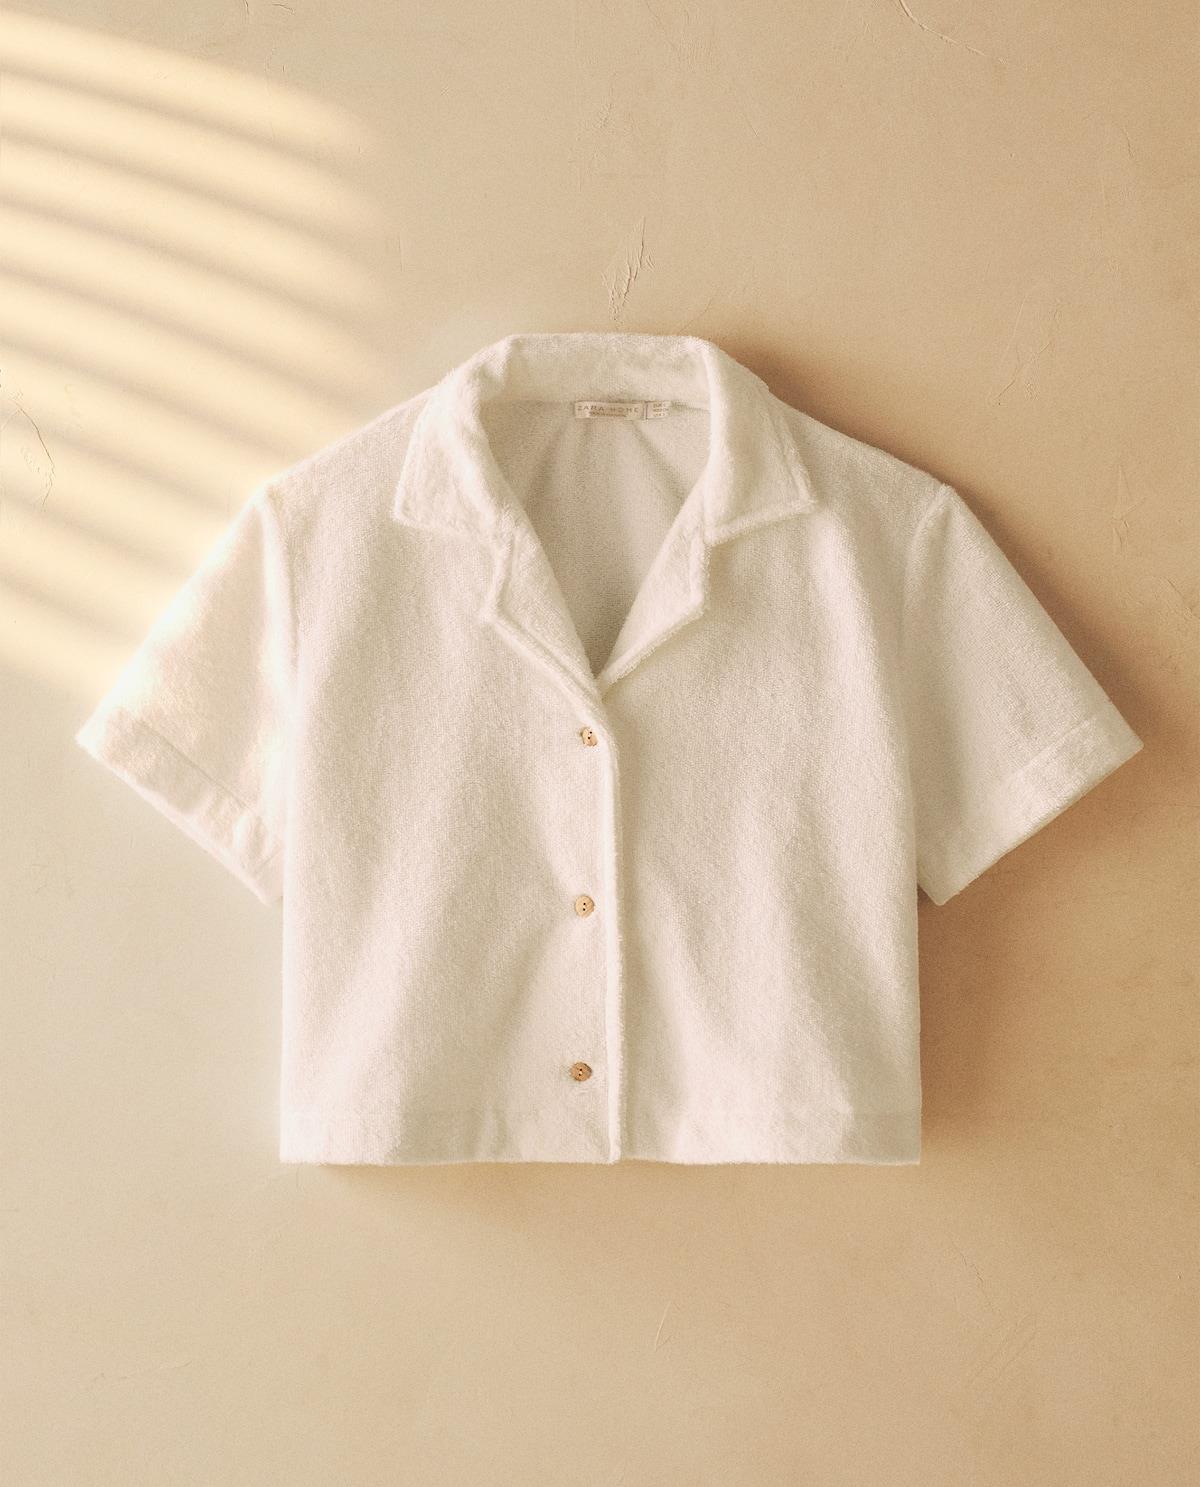 Camisa crop de rizo, Zara Home